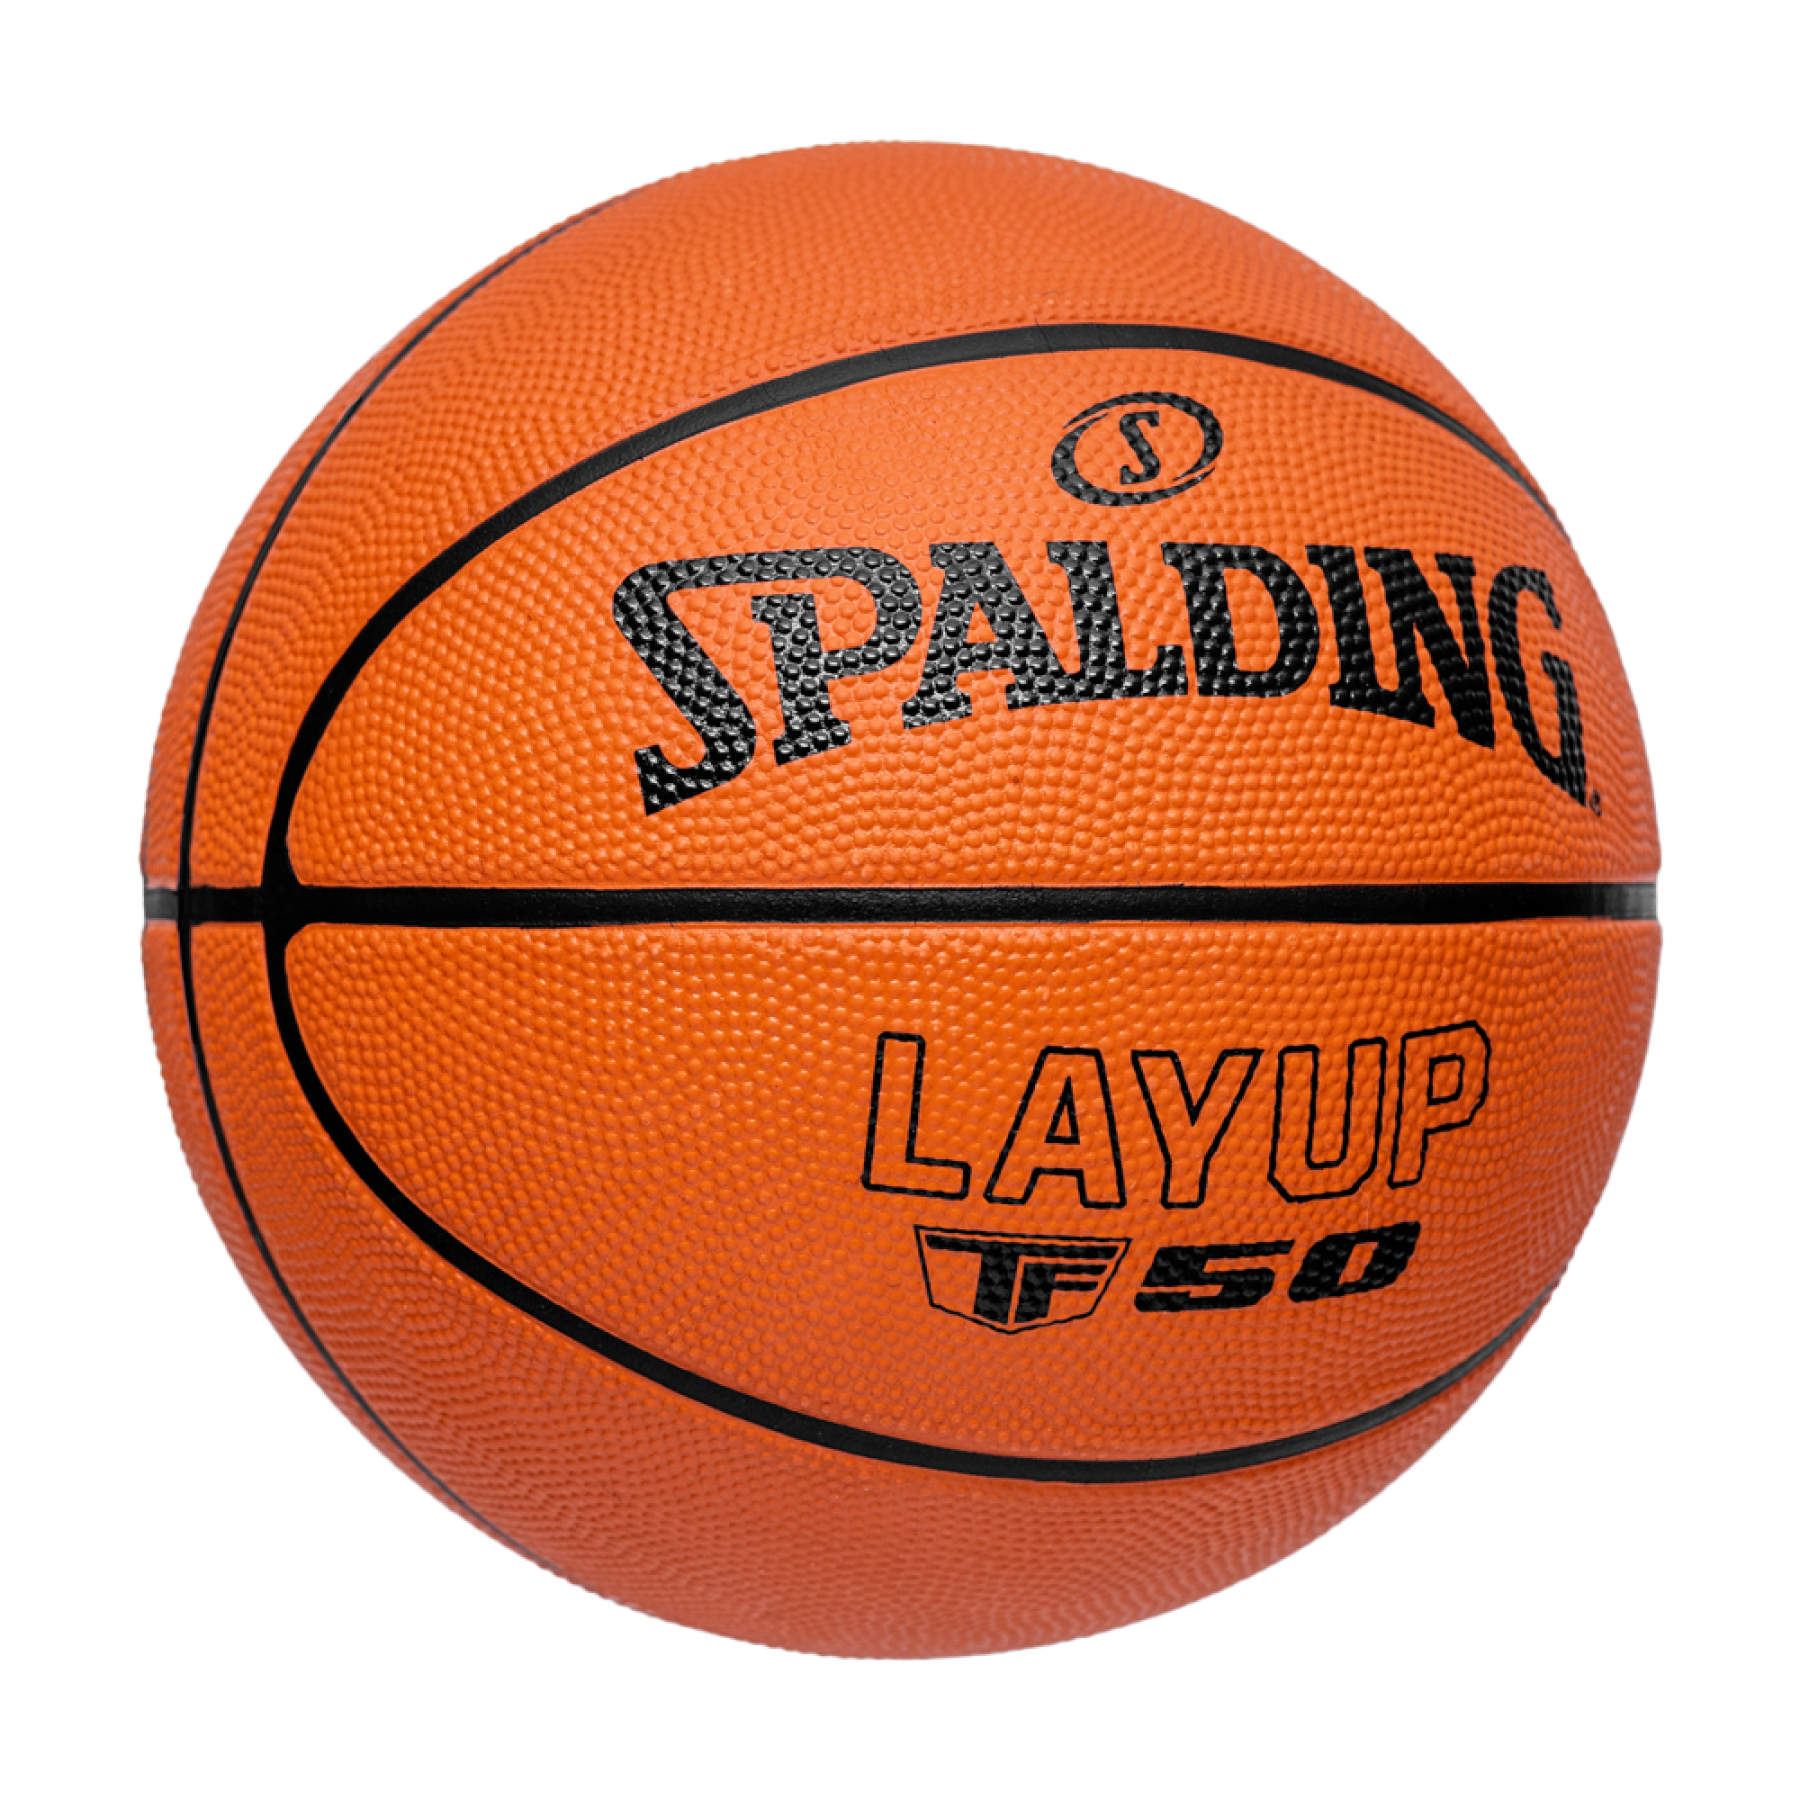 Pallone da basket Spalding Layup TF-50